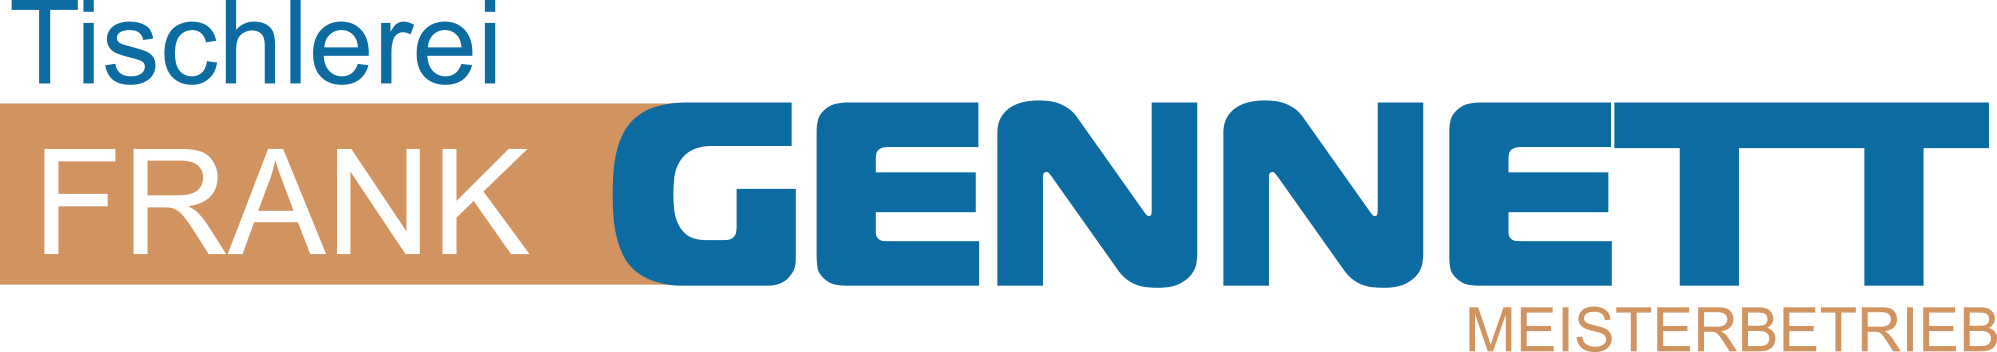 Tischlerei Frank Gennett GmbH - Logo